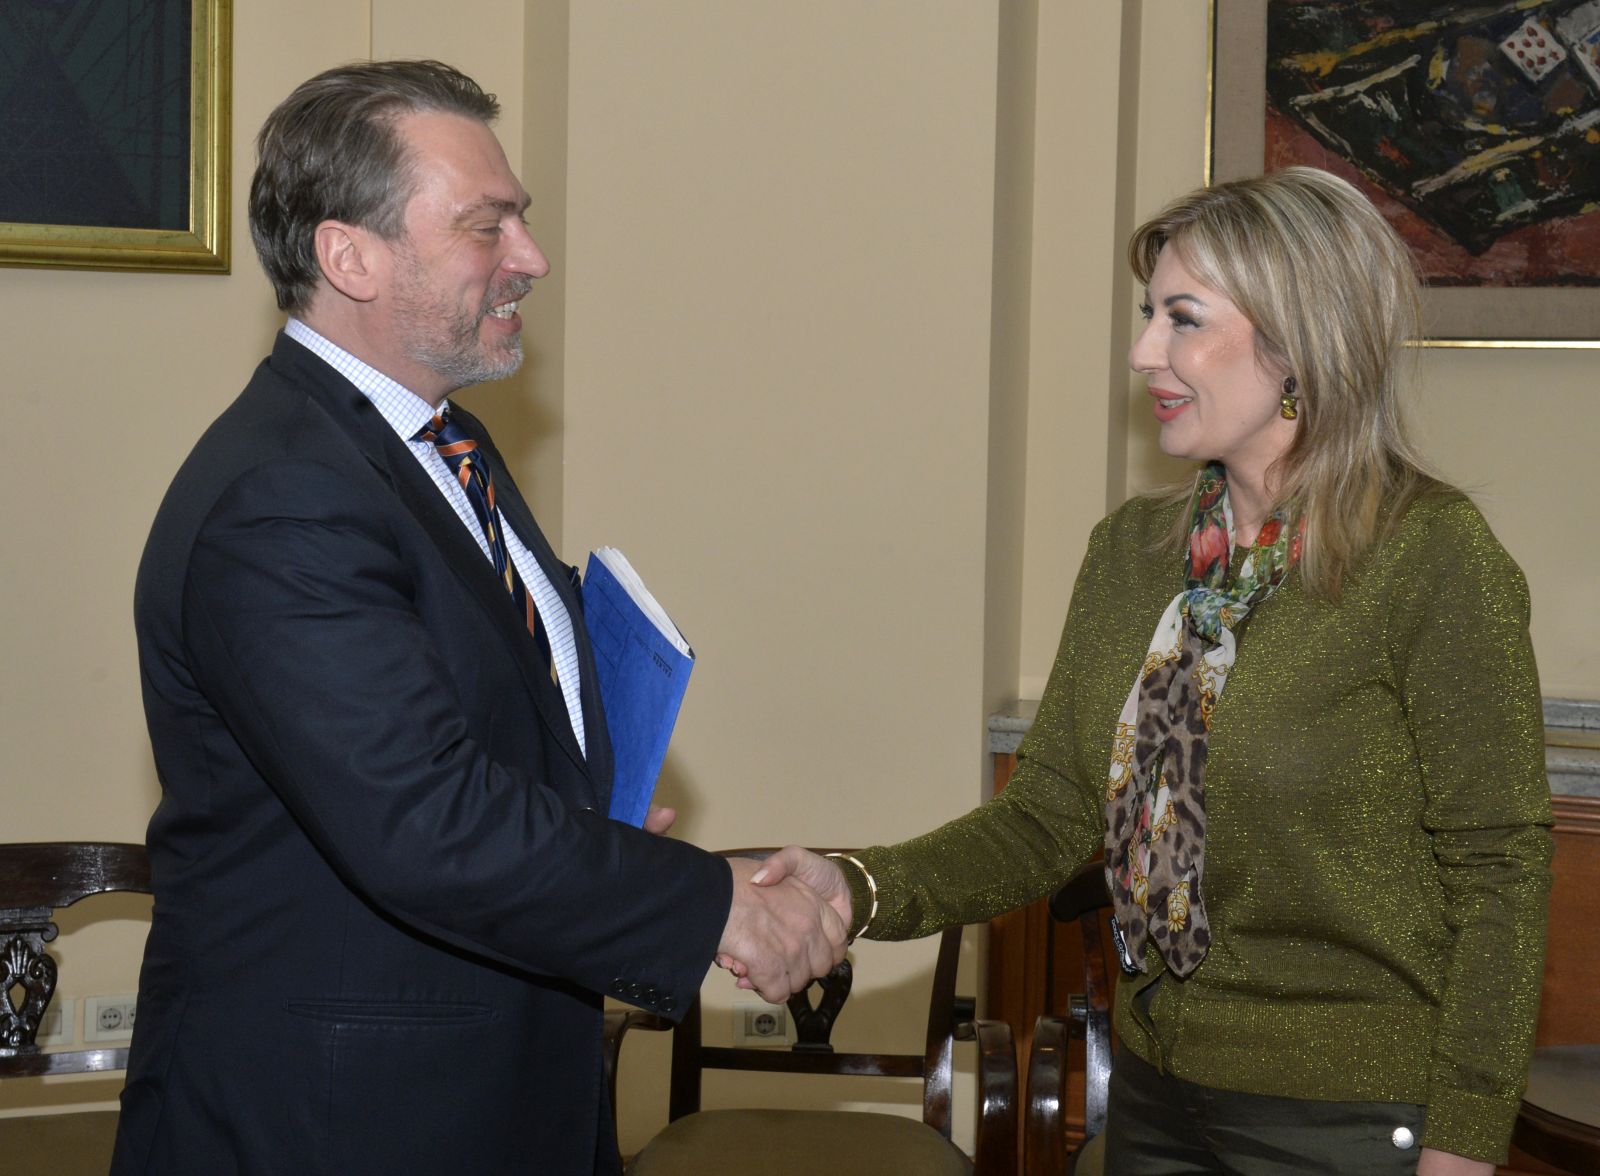 J. Joksimović and Ossowski: Serbia has a clear EU perspective